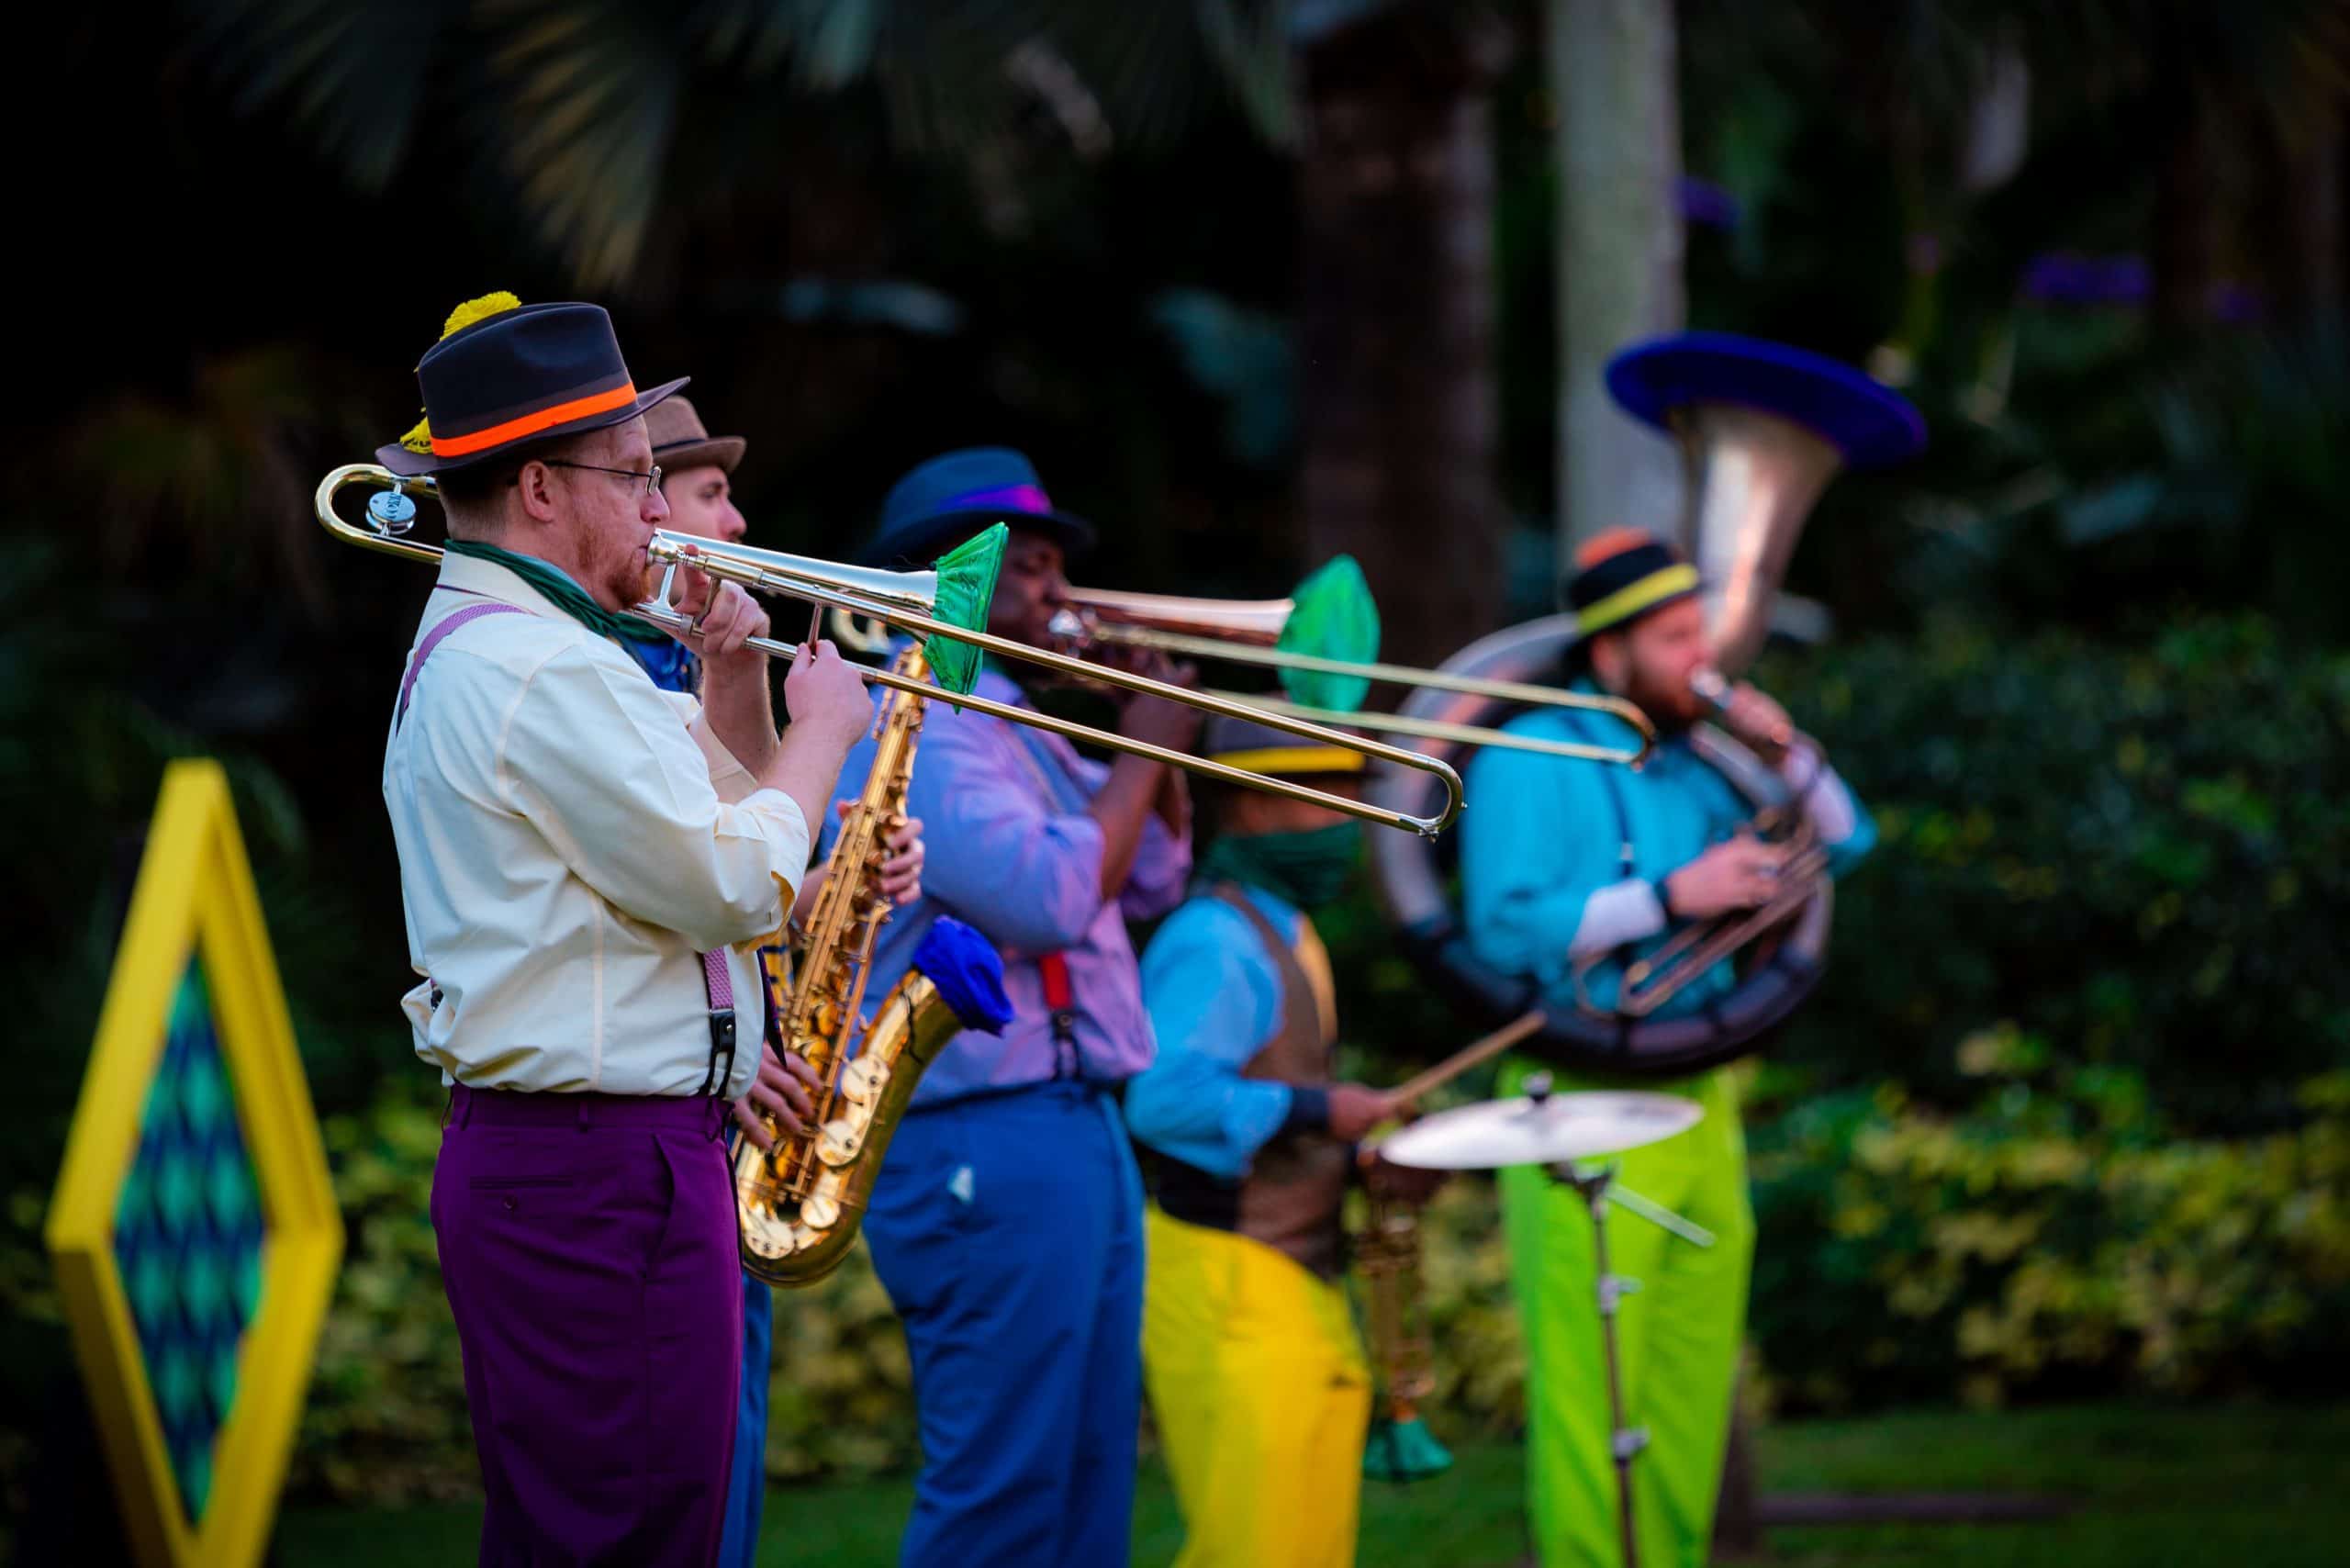 Visitar Busch Gardens Tampa Bay en febrero